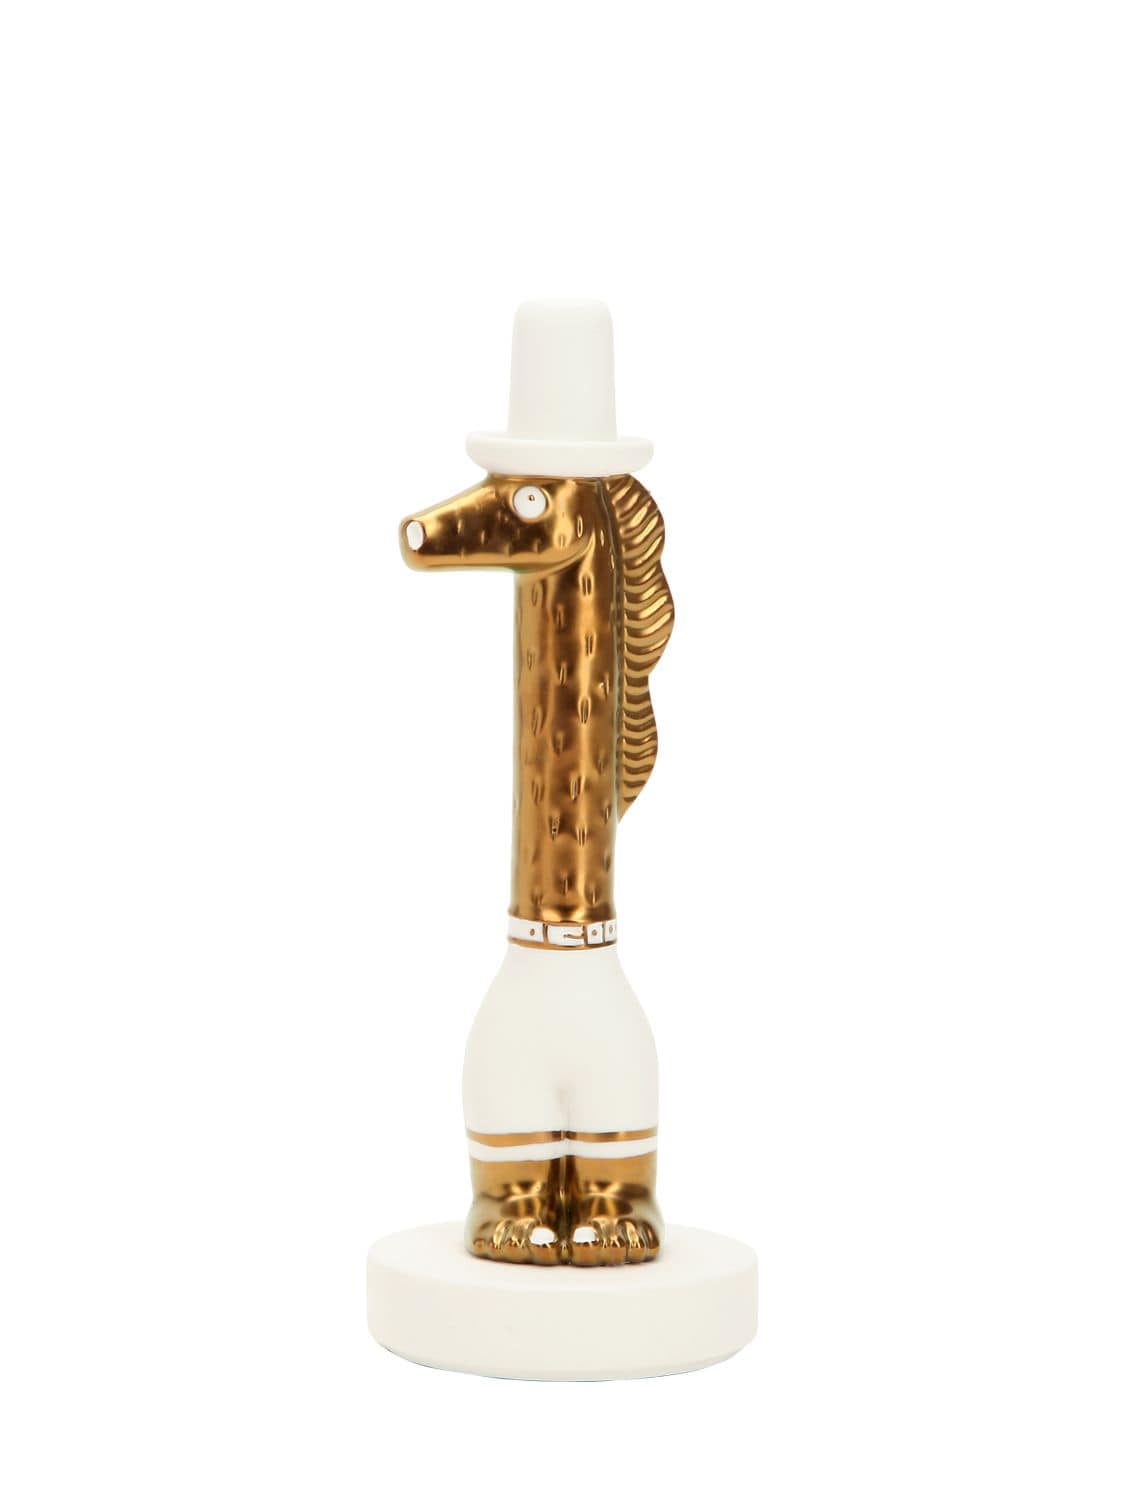 Bosa Calo Metallic Ceramic Figurine In Gold,white